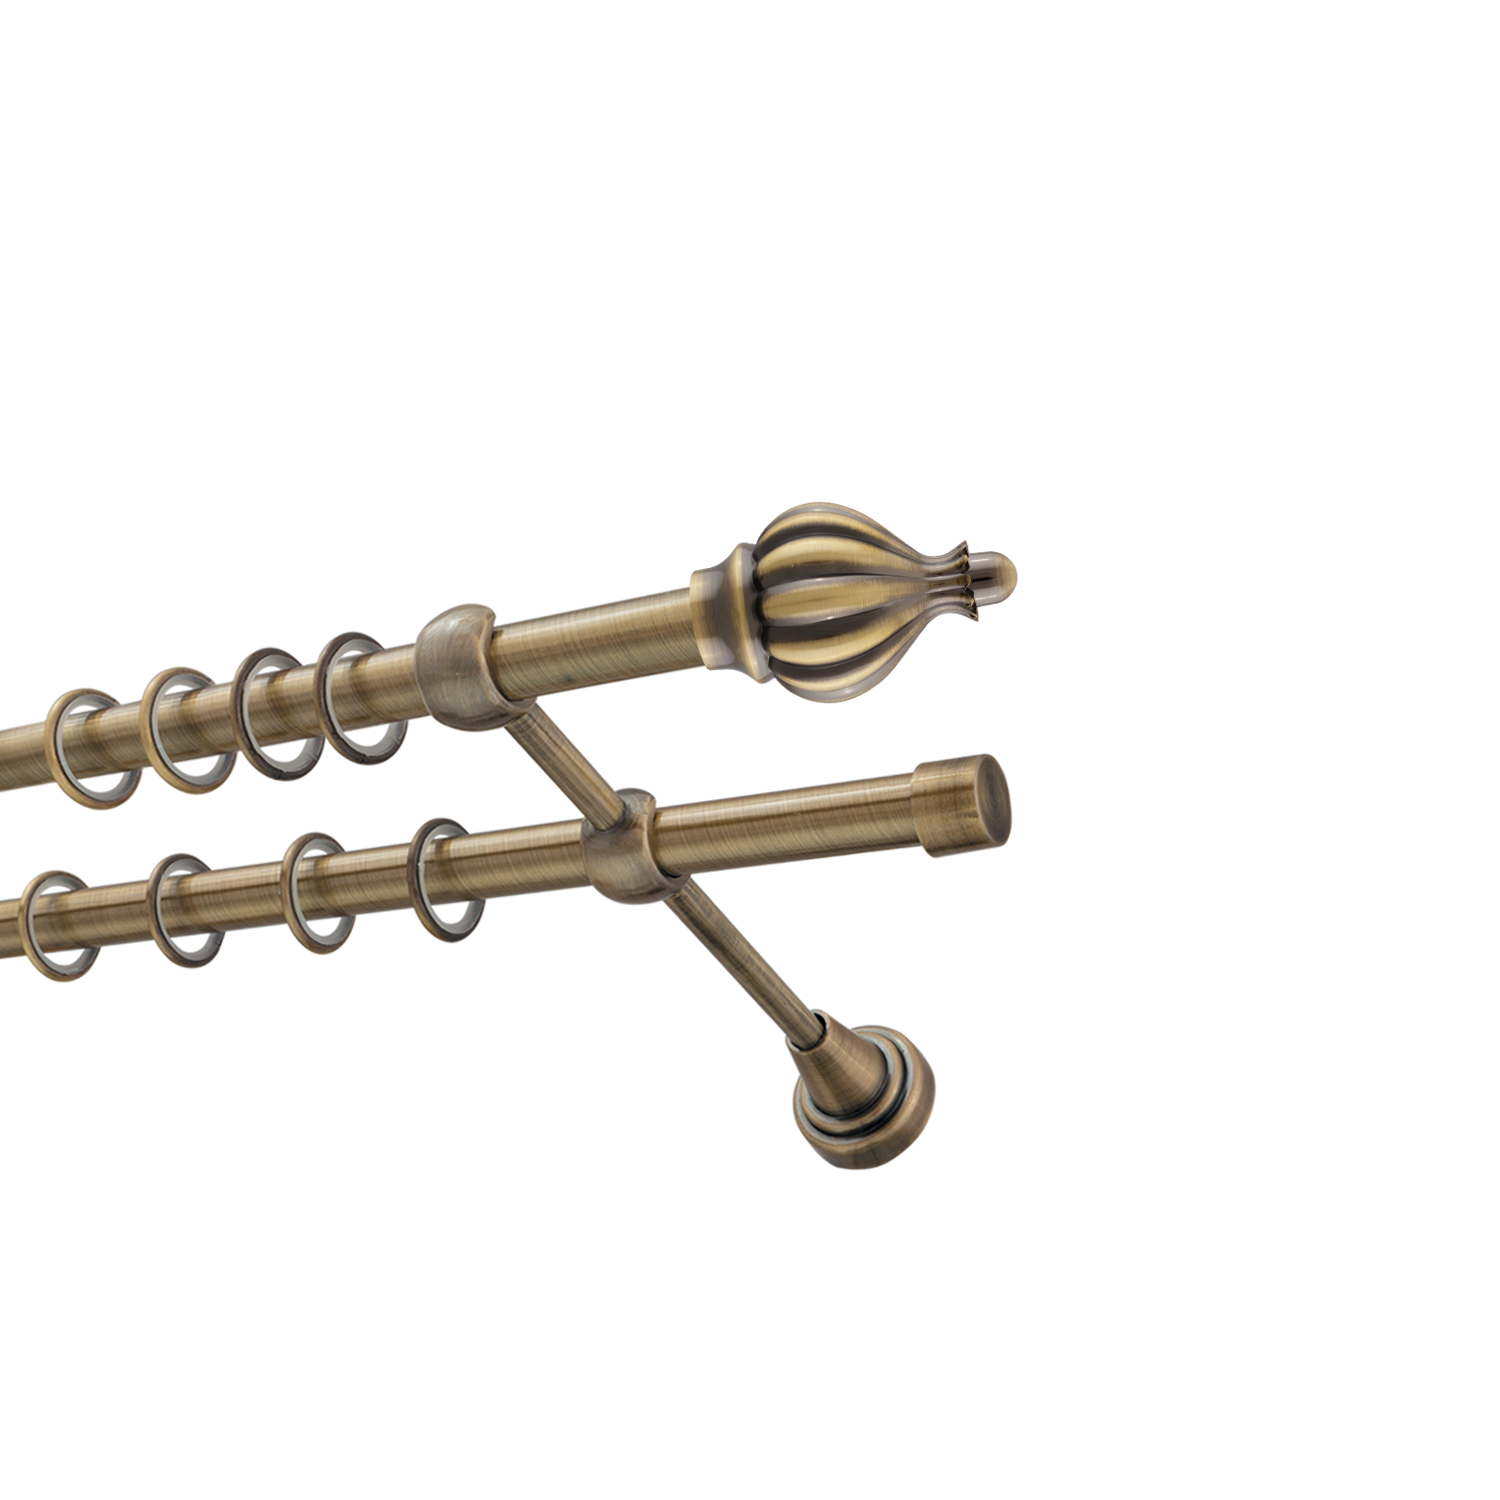 Металлический карниз для штор Афродита, двухрядный 16/16 мм, бронза, гладкая штанга, длина 300 см - фото Wikidecor.ru